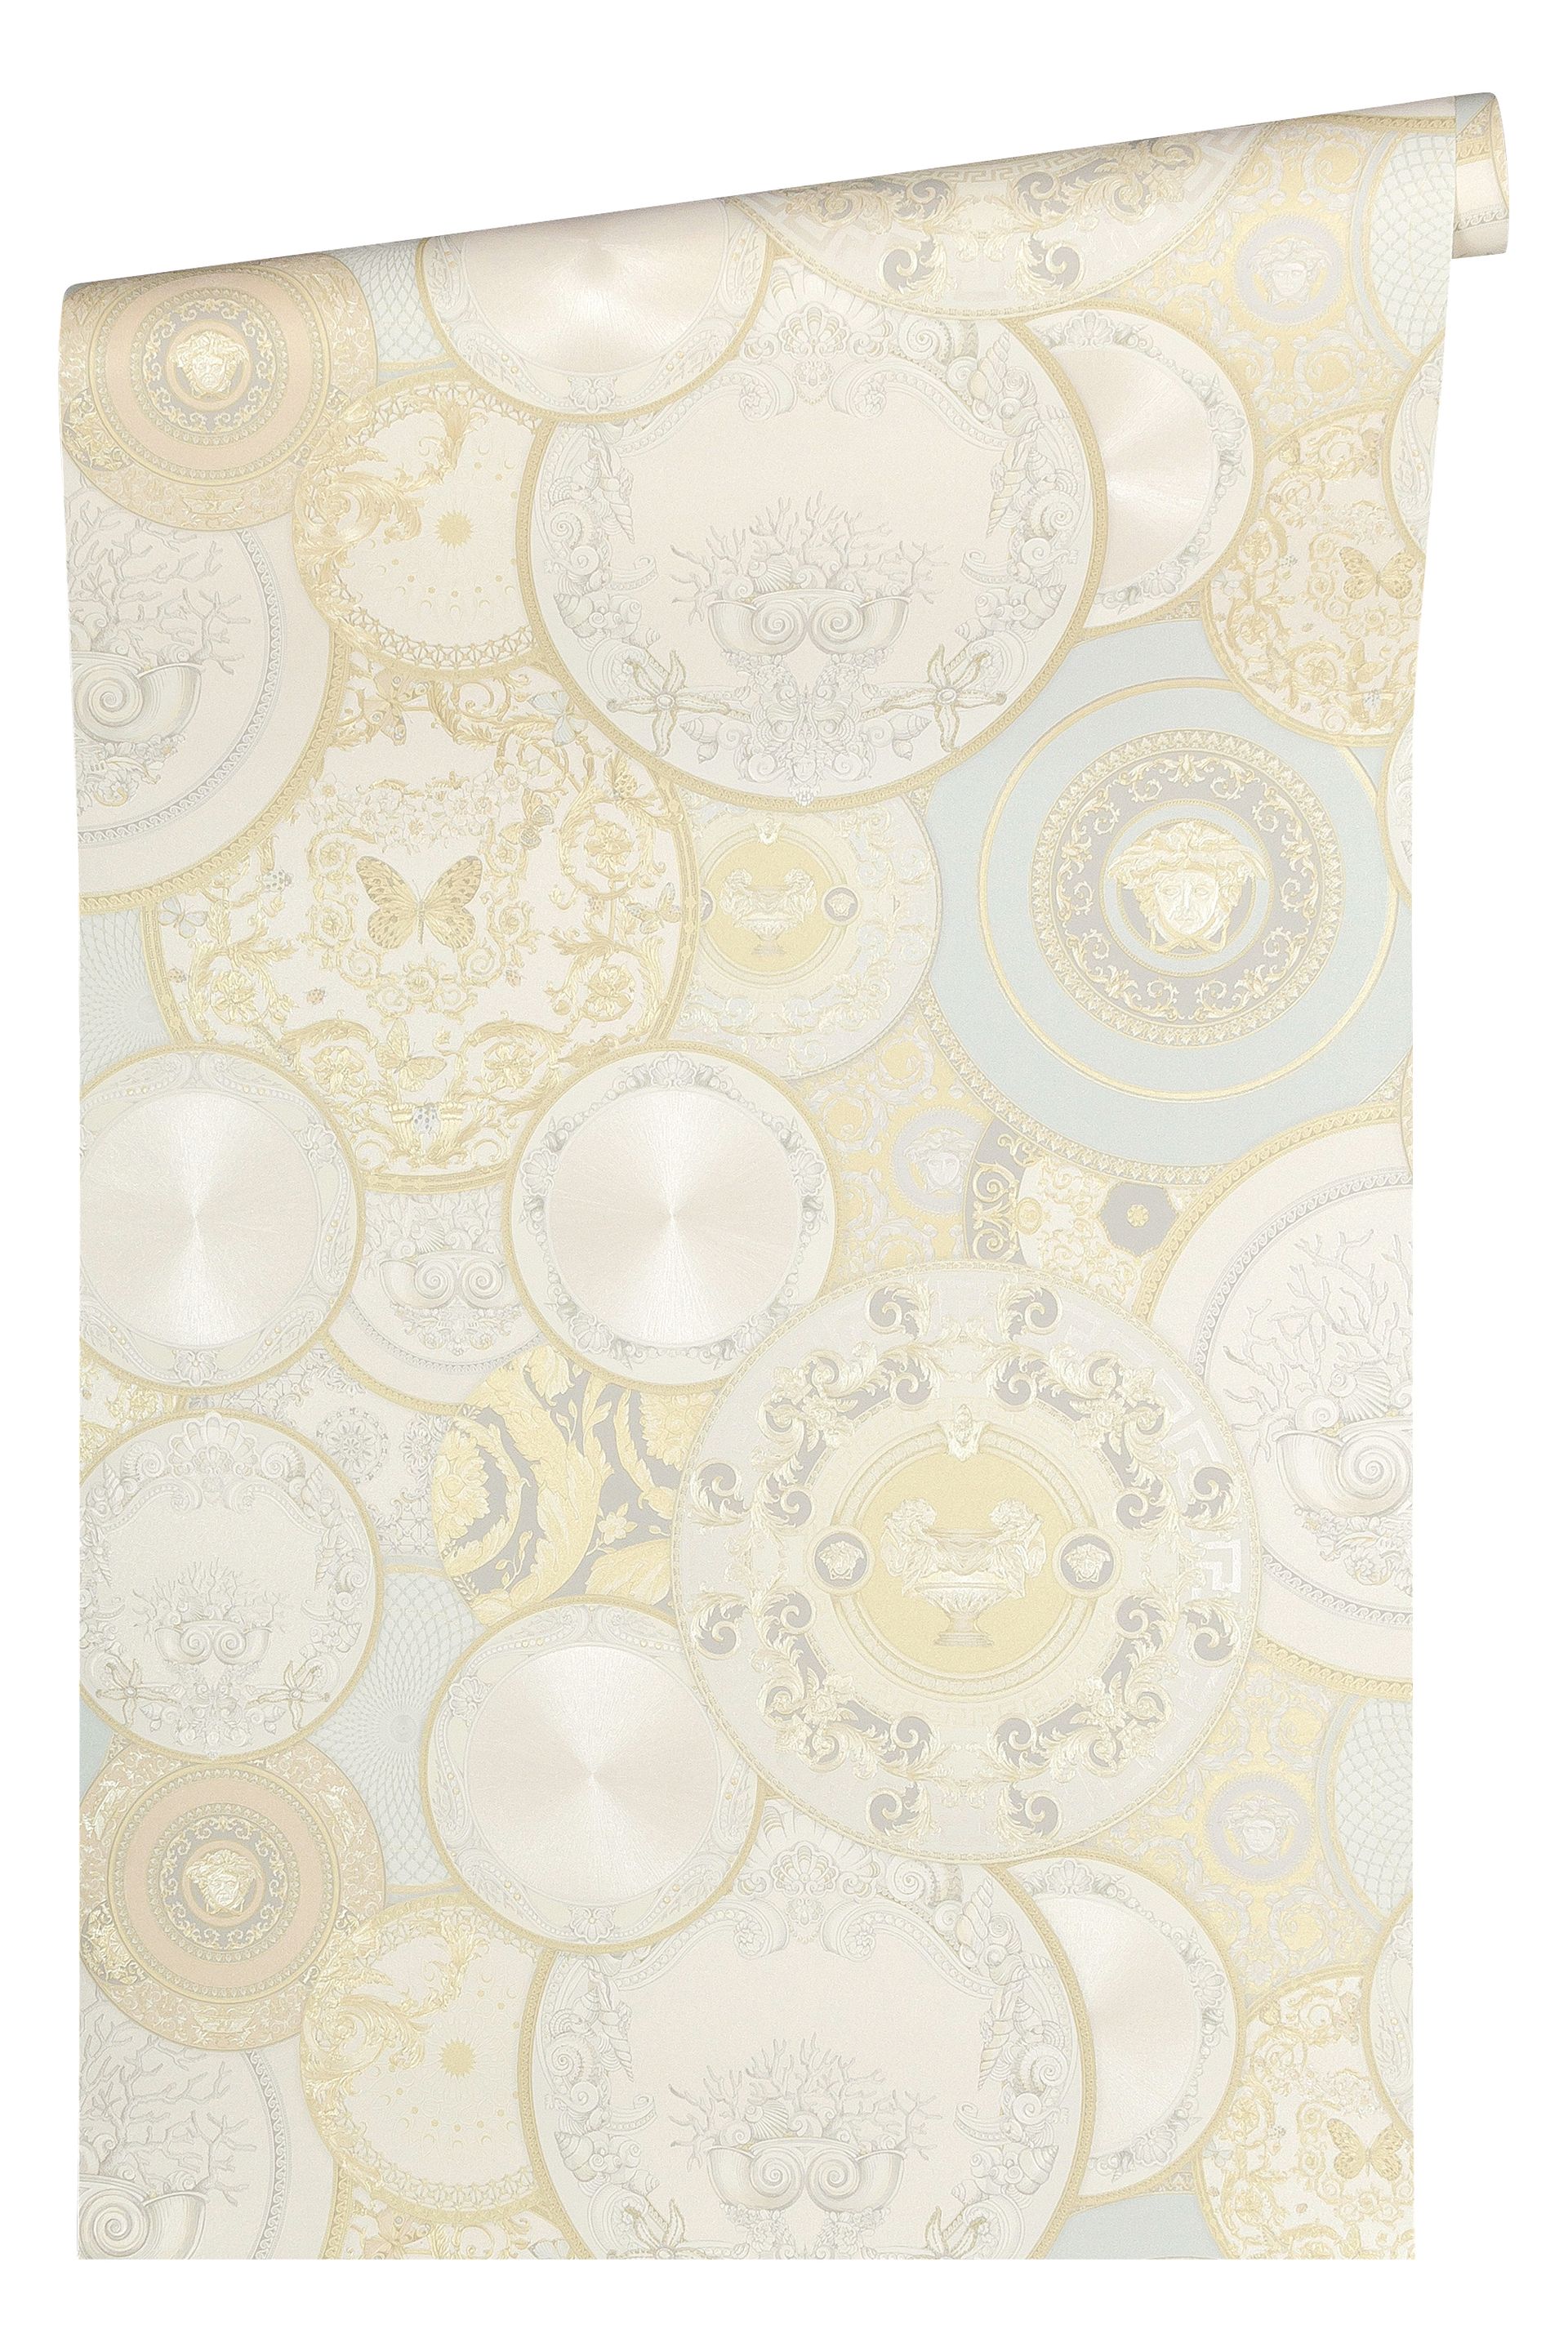 Versace wallpaper Versace 3, Design Tapete, gold, silber 349012